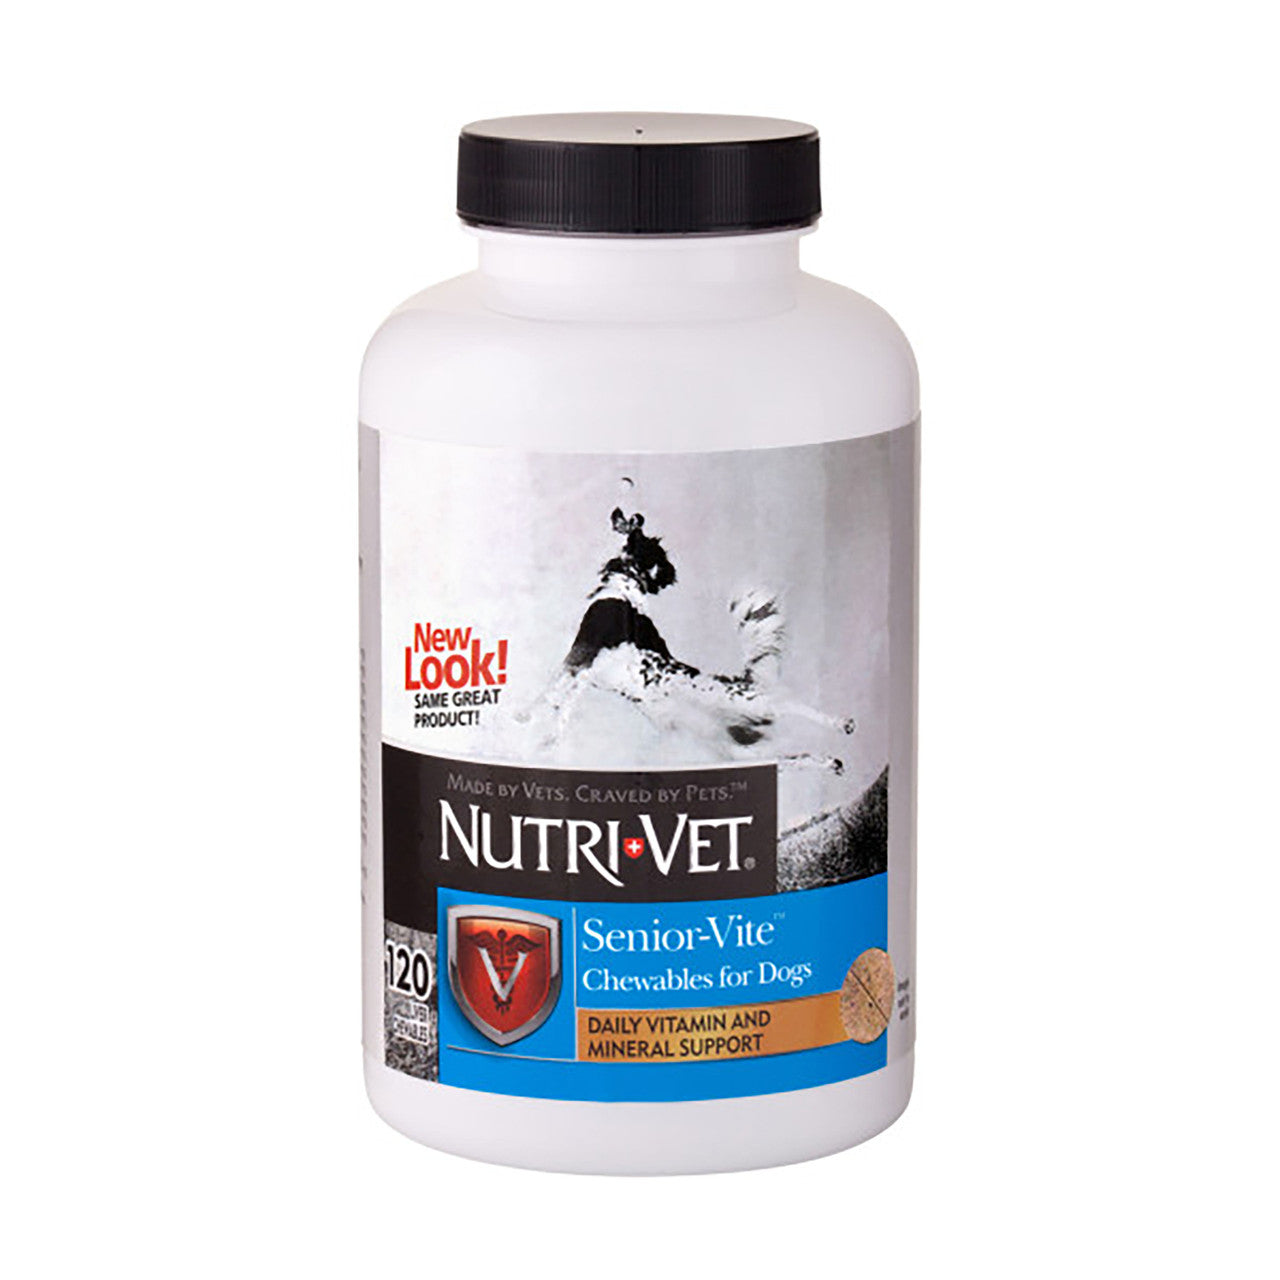 Nutri-Vet Senior-Vite Liver Chewables 120 Count